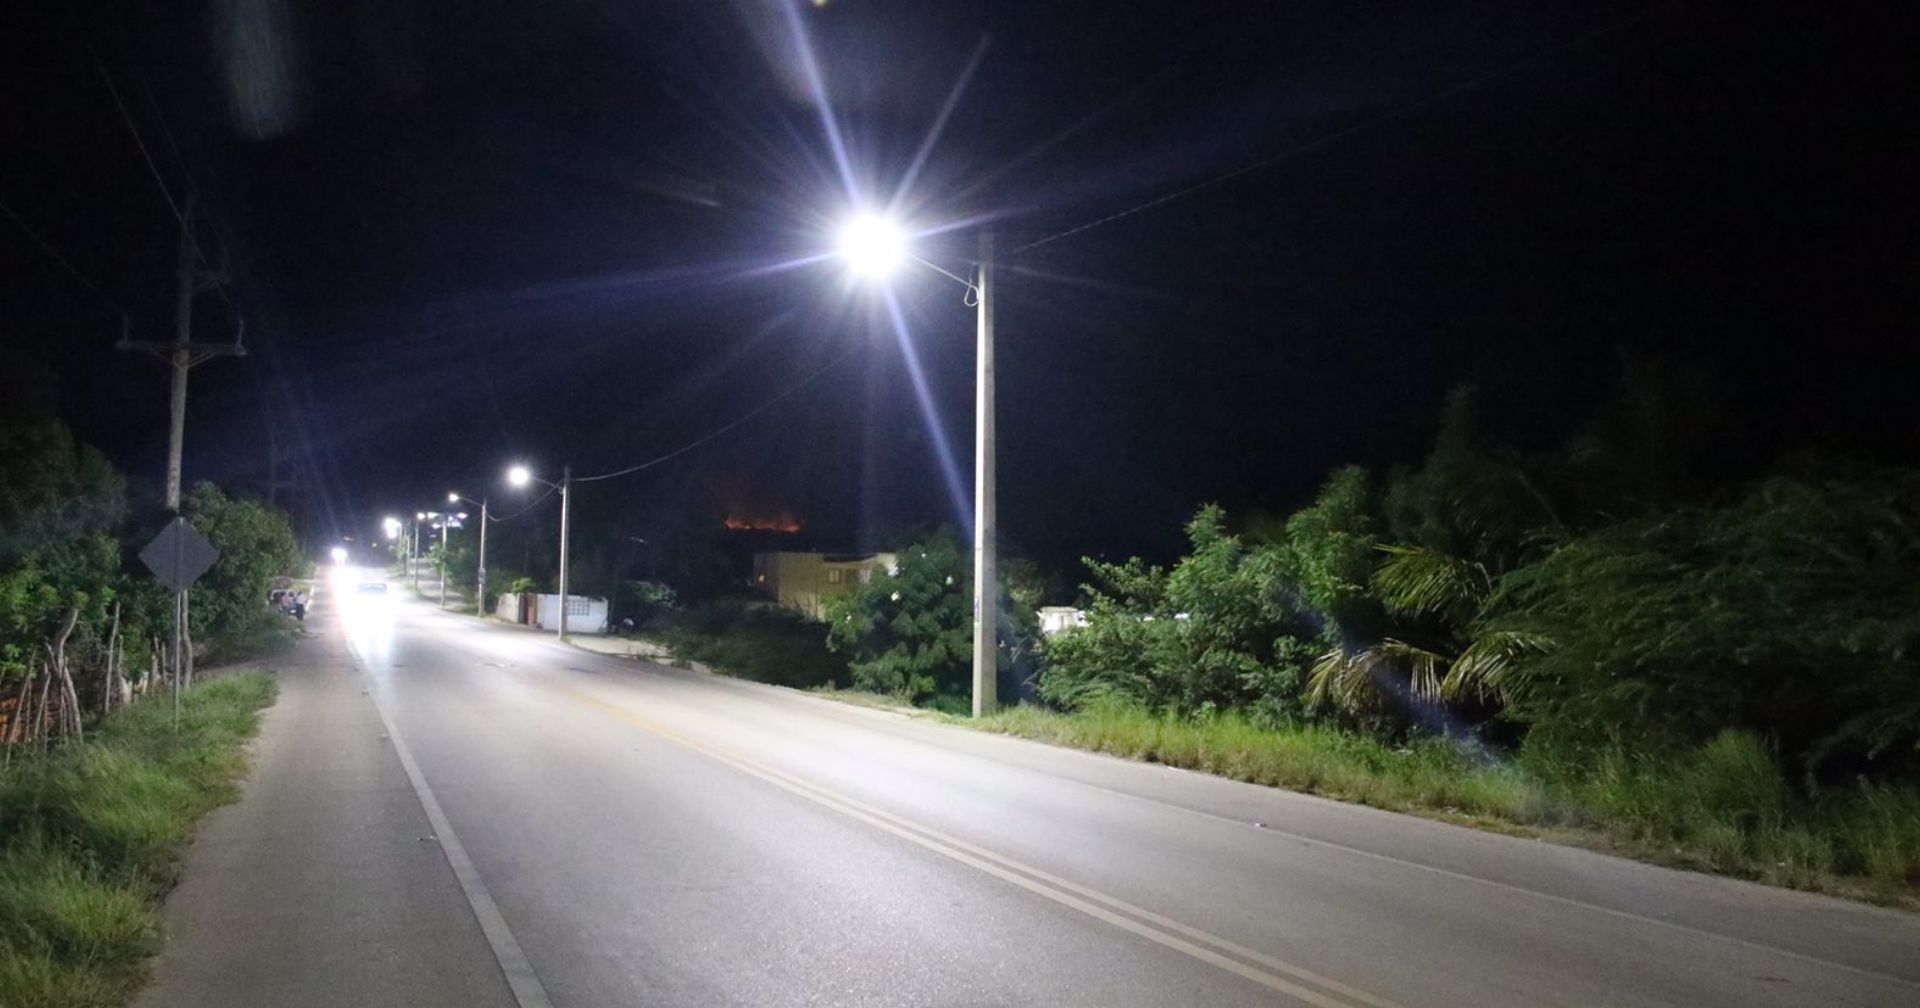 Edesur Dominicana instala 260 luminarias tipo led en Azua para mejorar la seguridad y el esparcimiento nocturno